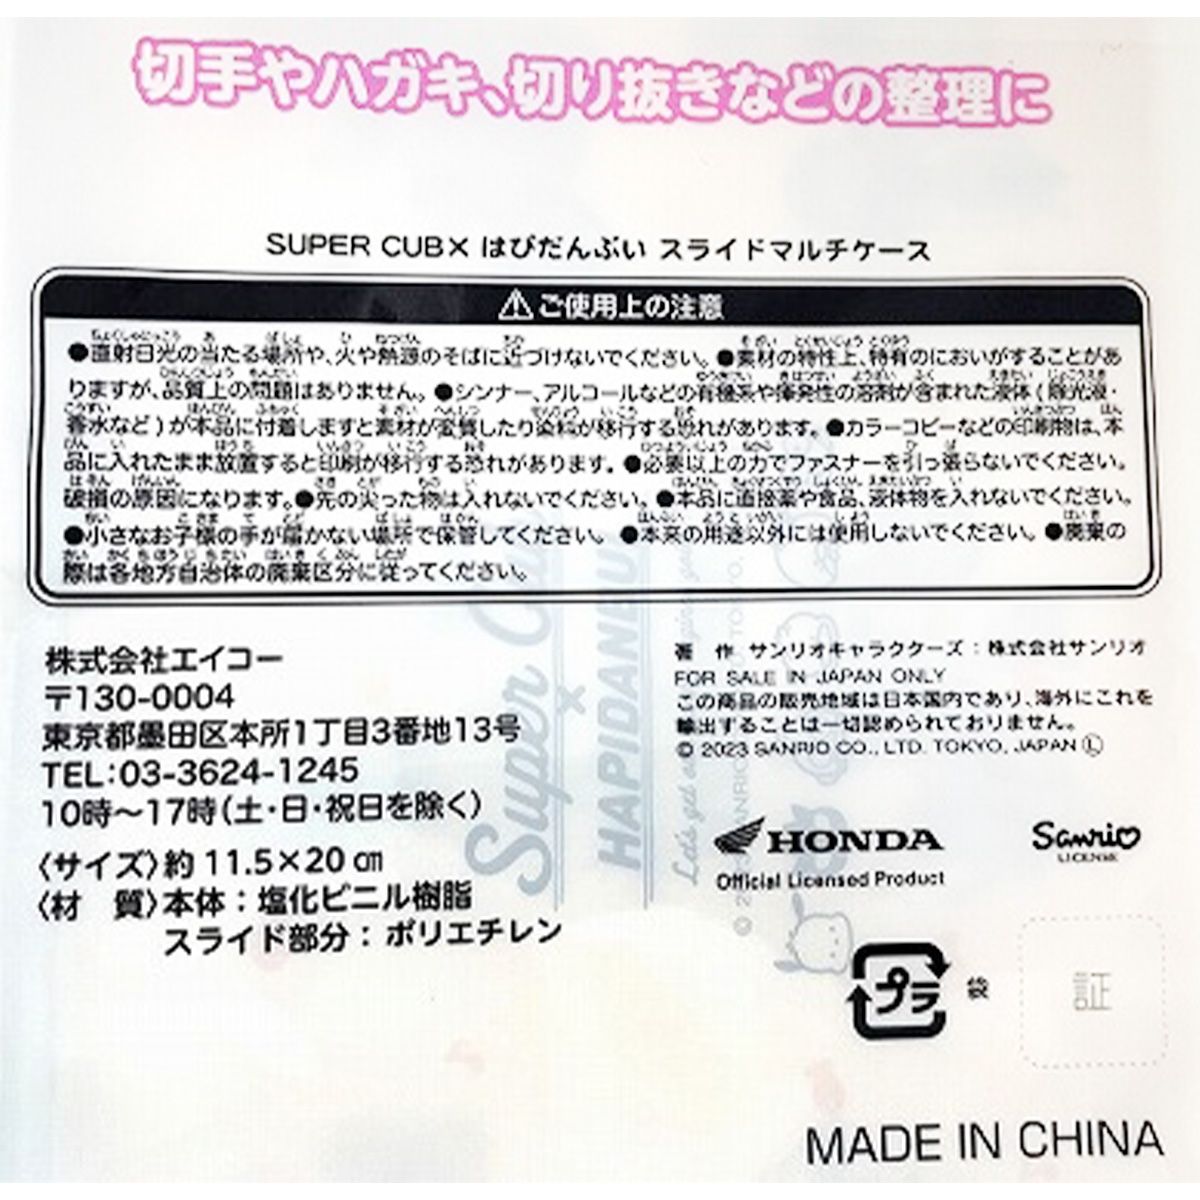 SUPER CUB×はぴだんぶい スライドマルチケース 361066